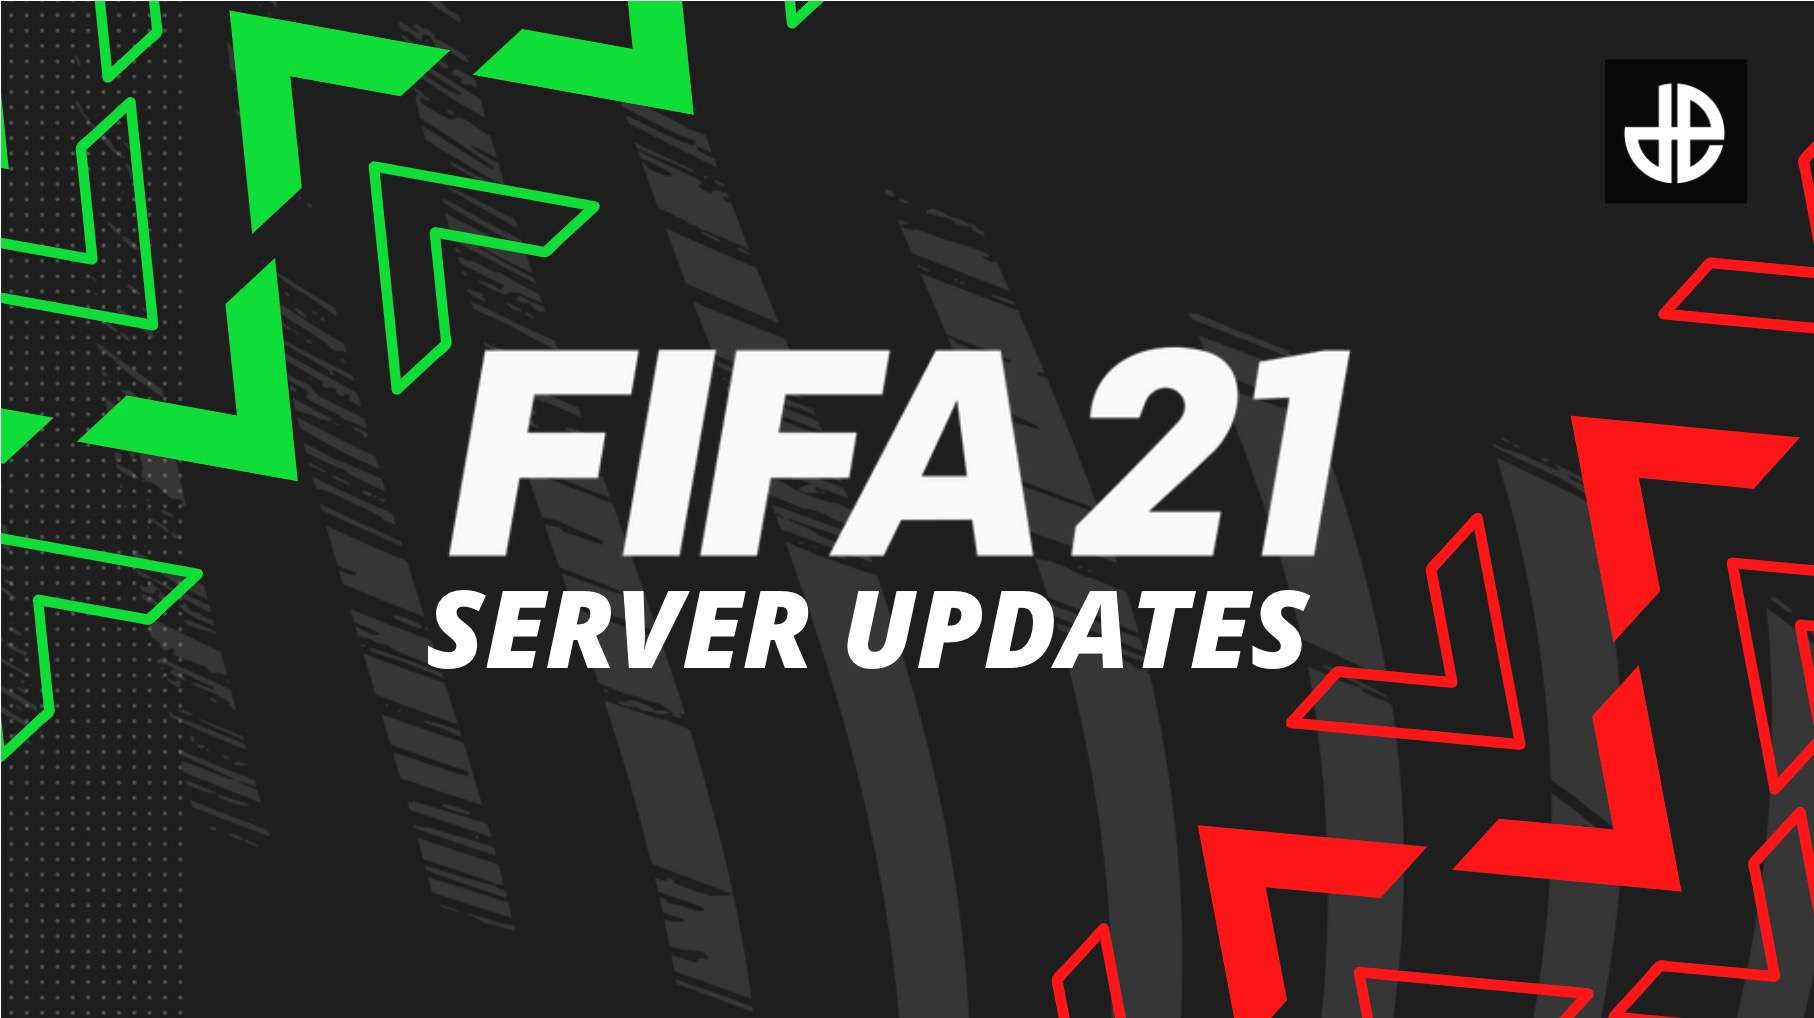 FIFA 21 EA servers image